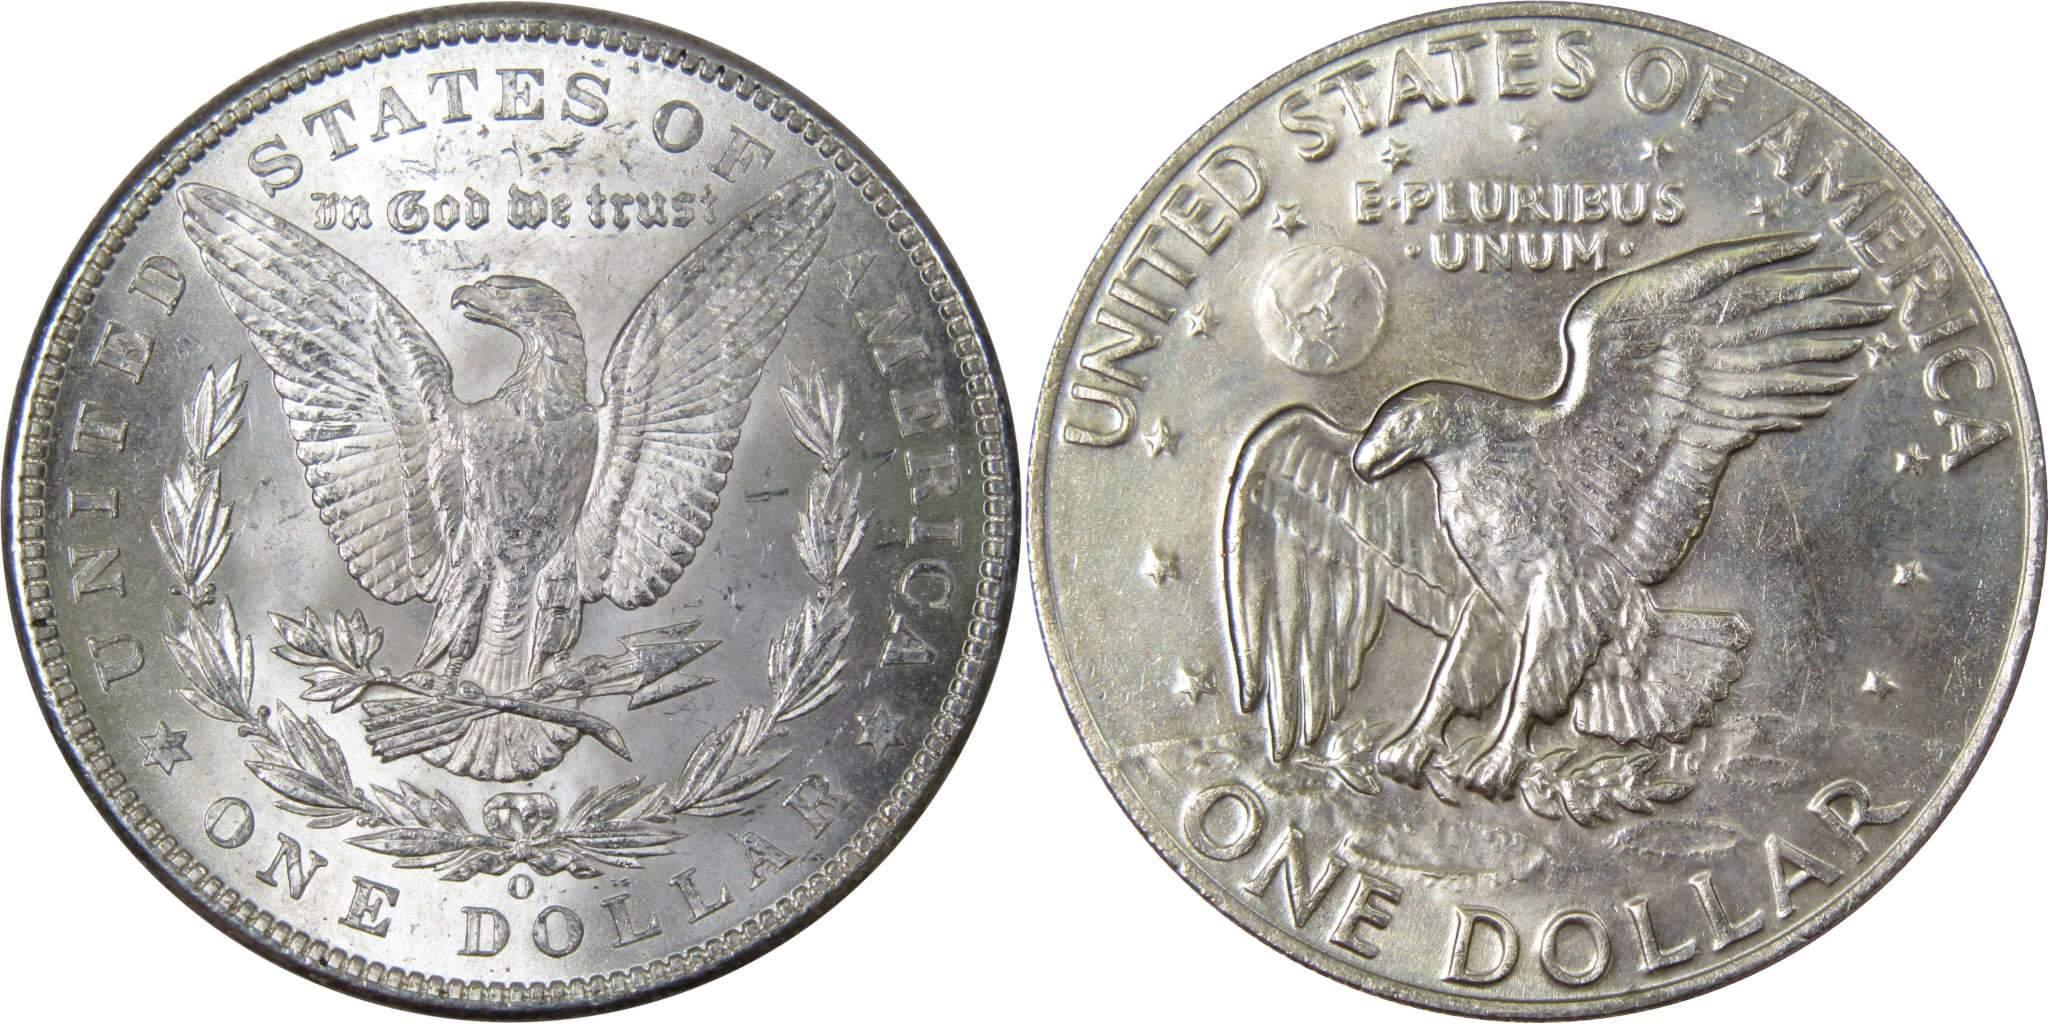 1902 O Morgan Dollar BU Uncirculated 90% Silver with 1978 IKE$ BU Uncirculated - Morgan coin - Morgan silver dollar - Morgan silver dollar for sale - Profile Coins &amp; Collectibles